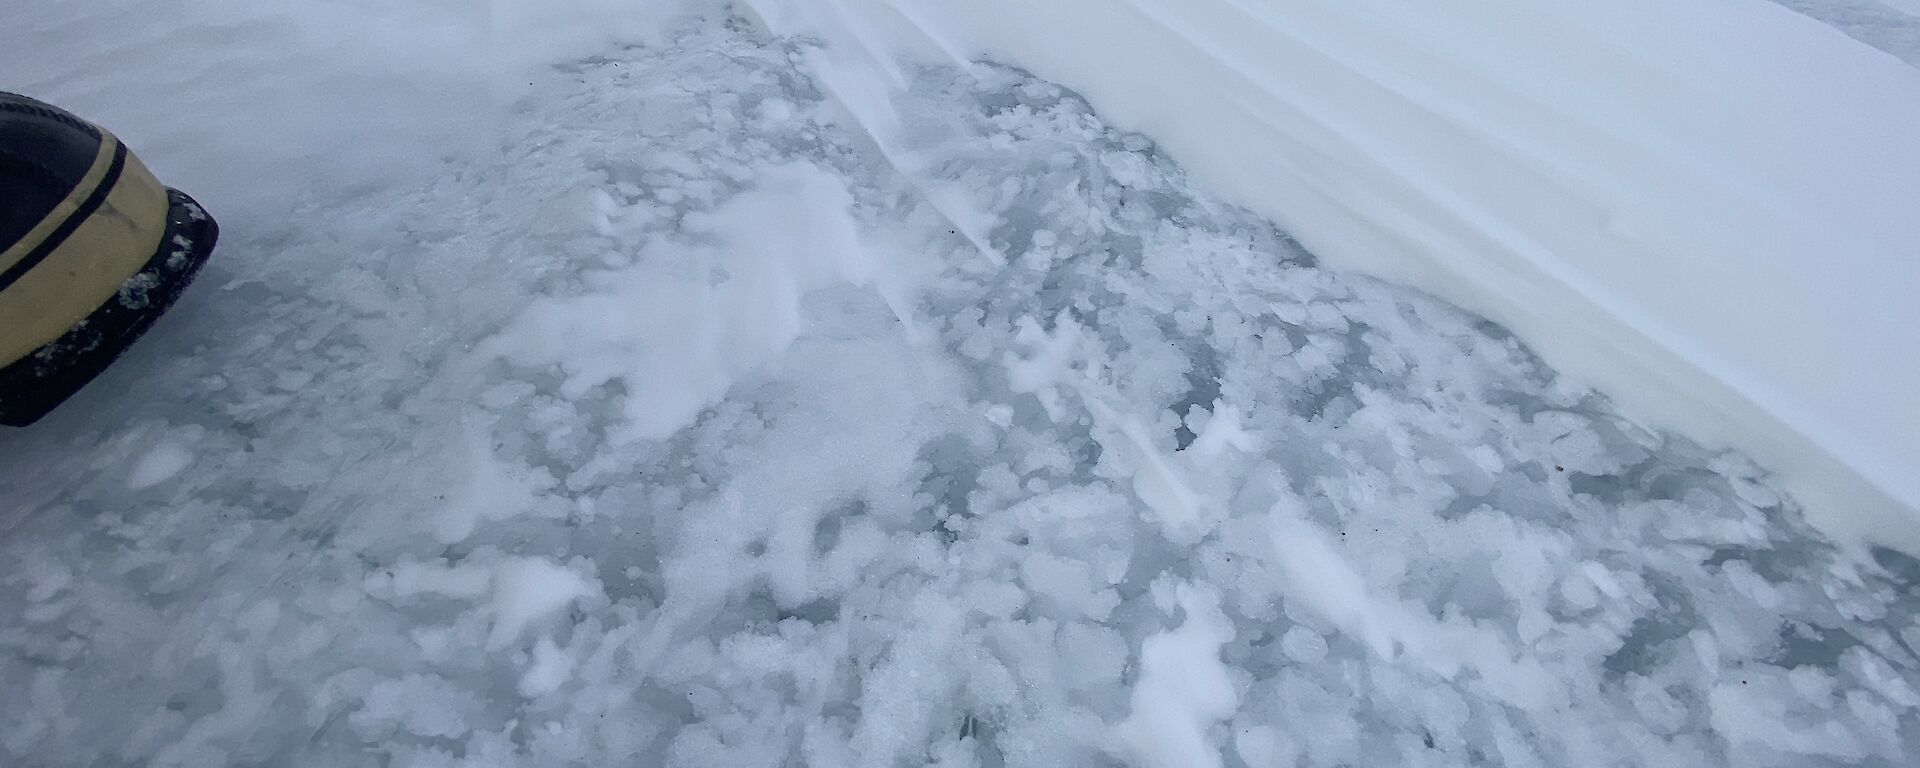 Patterns in a frozen fresh water lake near Casey